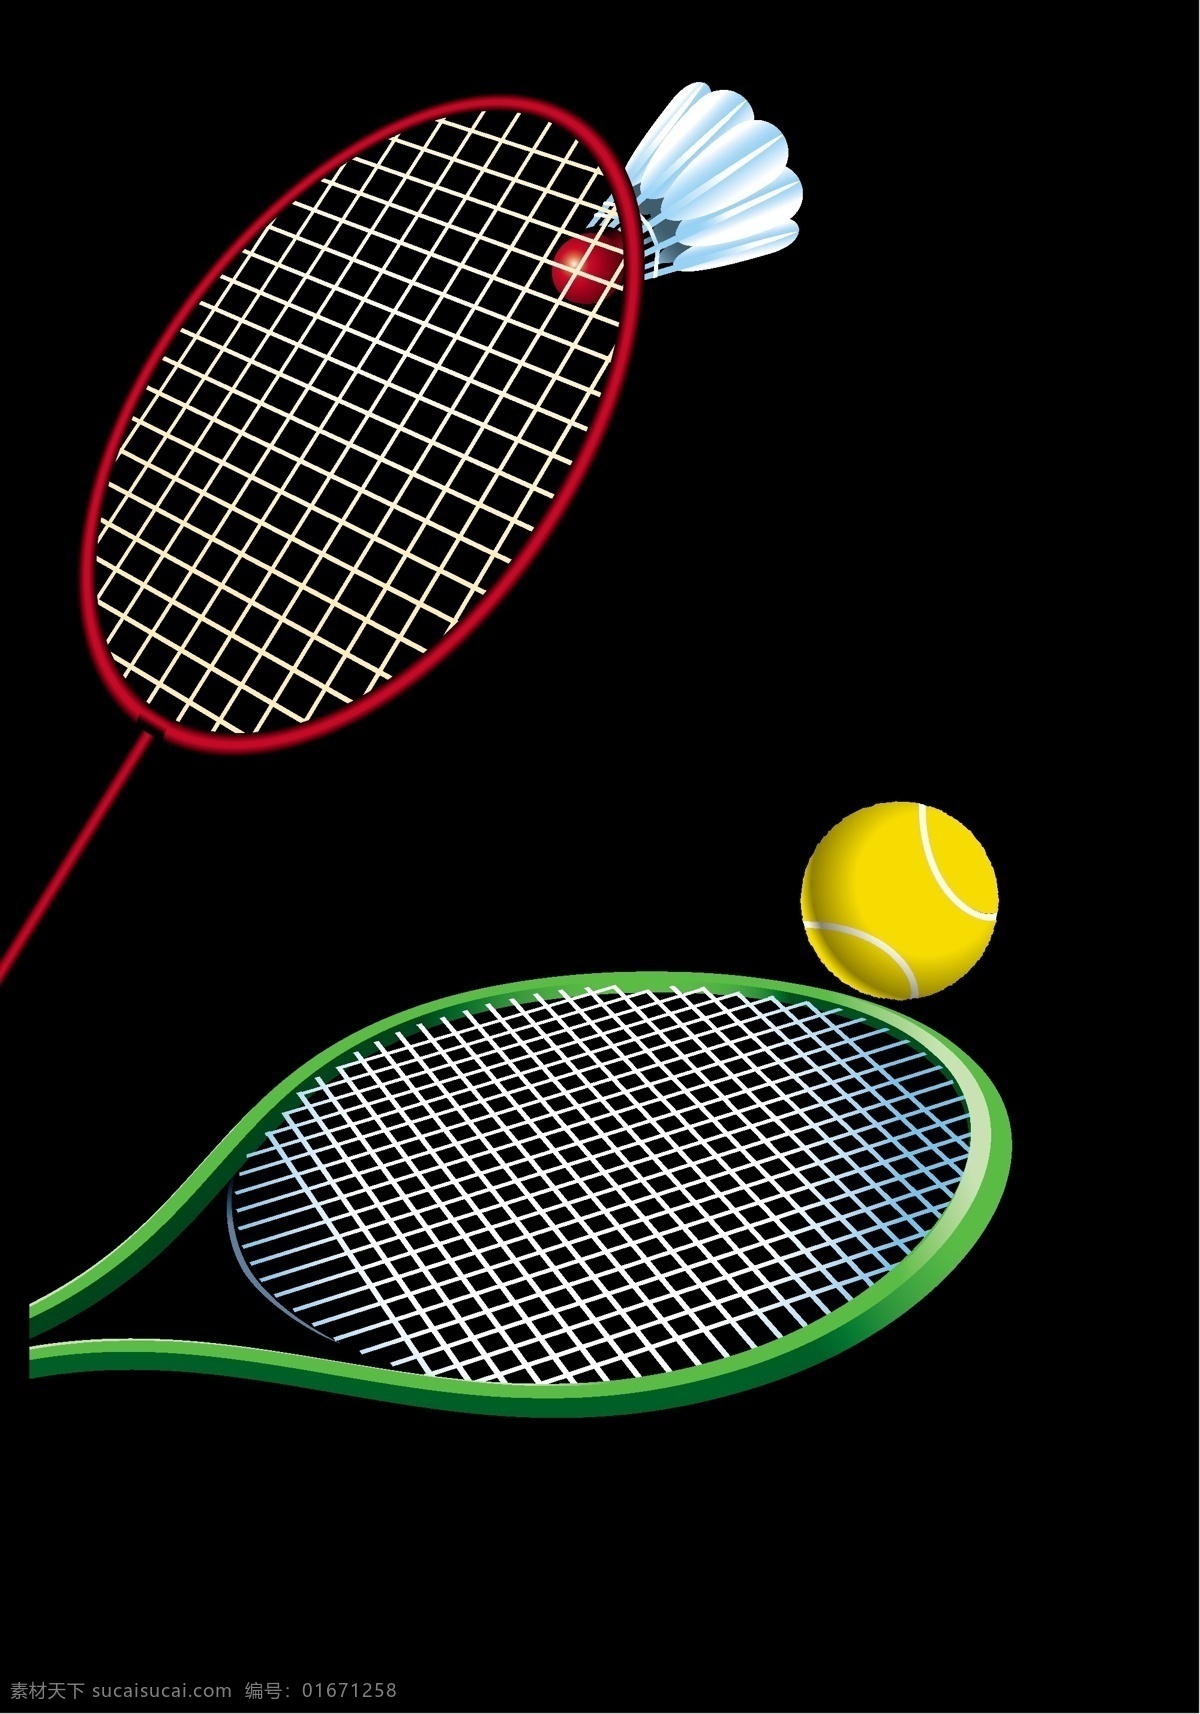 网球拍 羽毛球拍 矢量图 运动器材 体育用品 生活百科